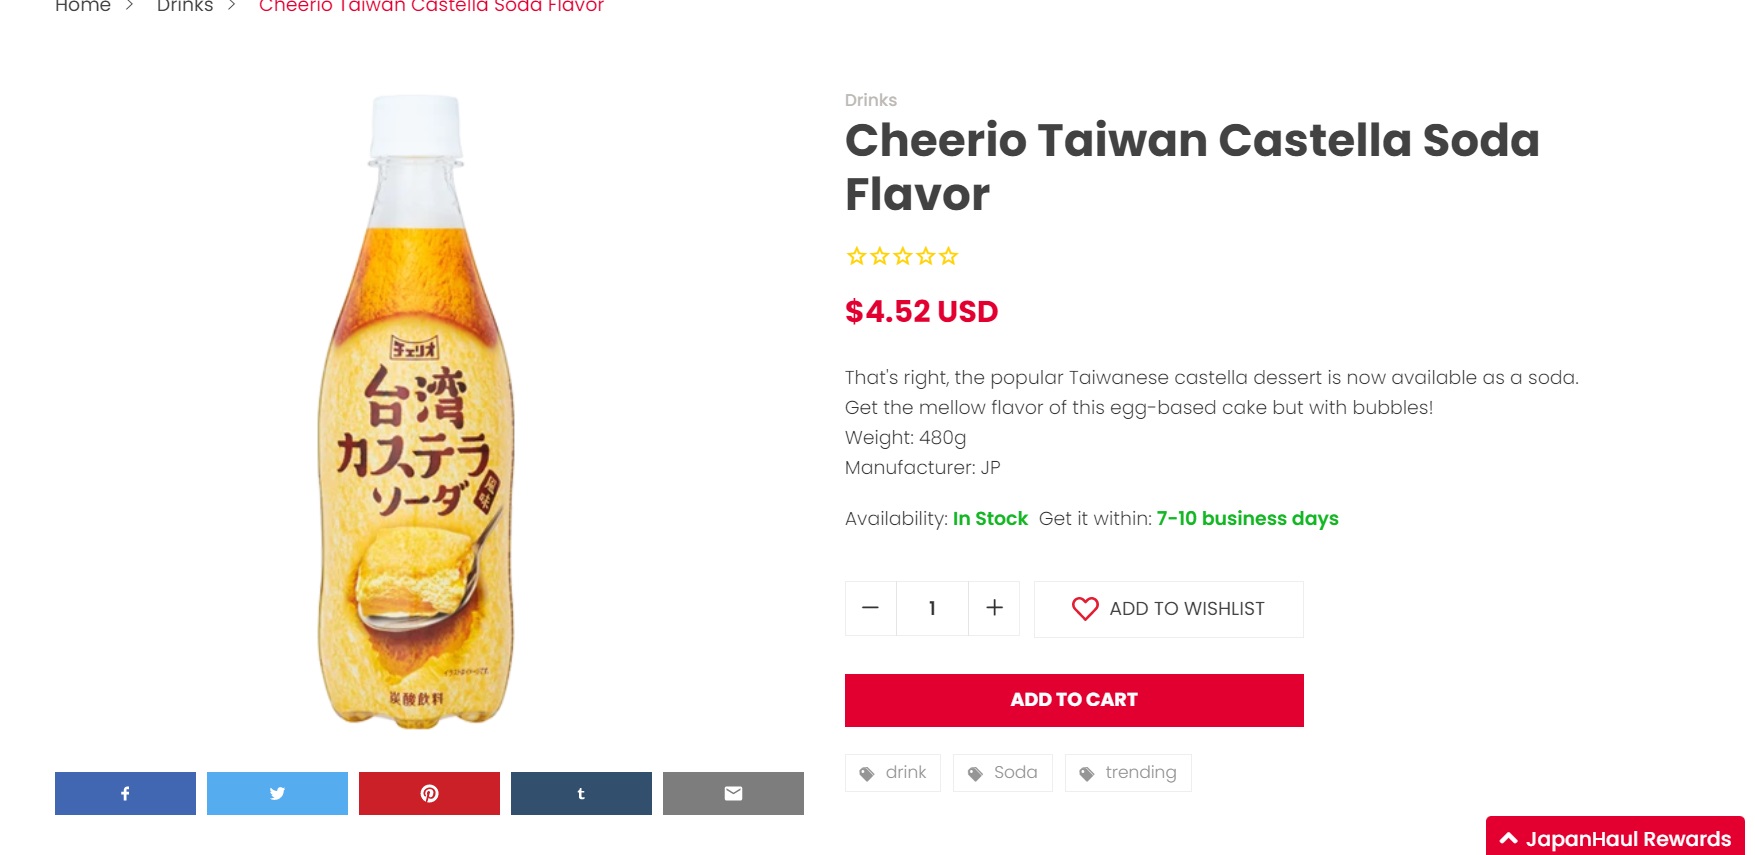 线上购物平台Japan Haul也有出售台湾古早味蛋糕汽水，售价为4.52美金（约18令吉78仙）。-图取自线上购物平台Japan Haul-